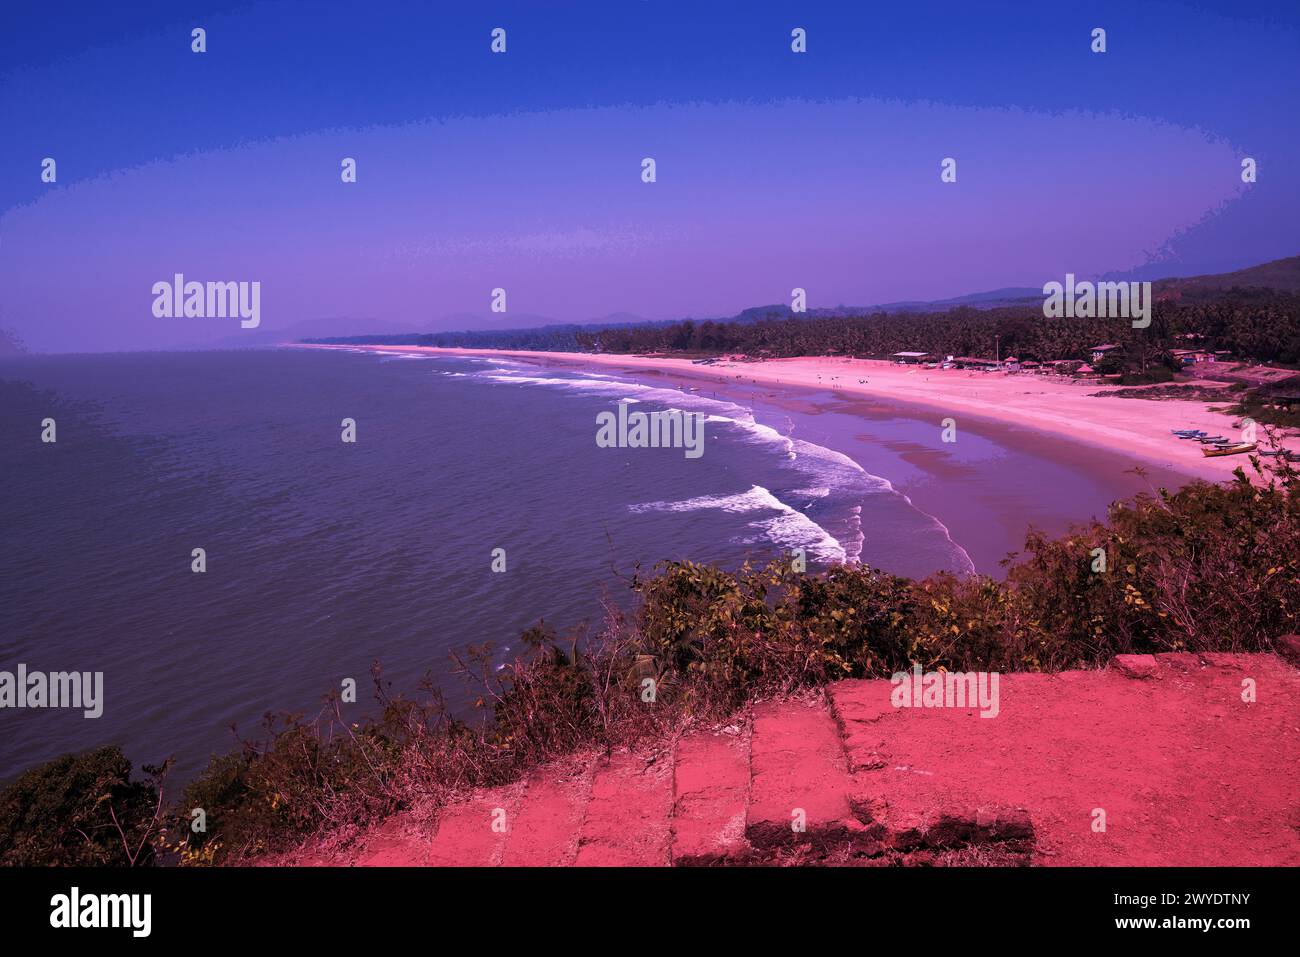 Blickpunkt der Drohne in karnataka am fantastischen Strand (vielleicht Gokarna oder die Stadt in kerala oder Goa). Fischerboote an der Küste (Strand). Gefiltert. Stockfoto